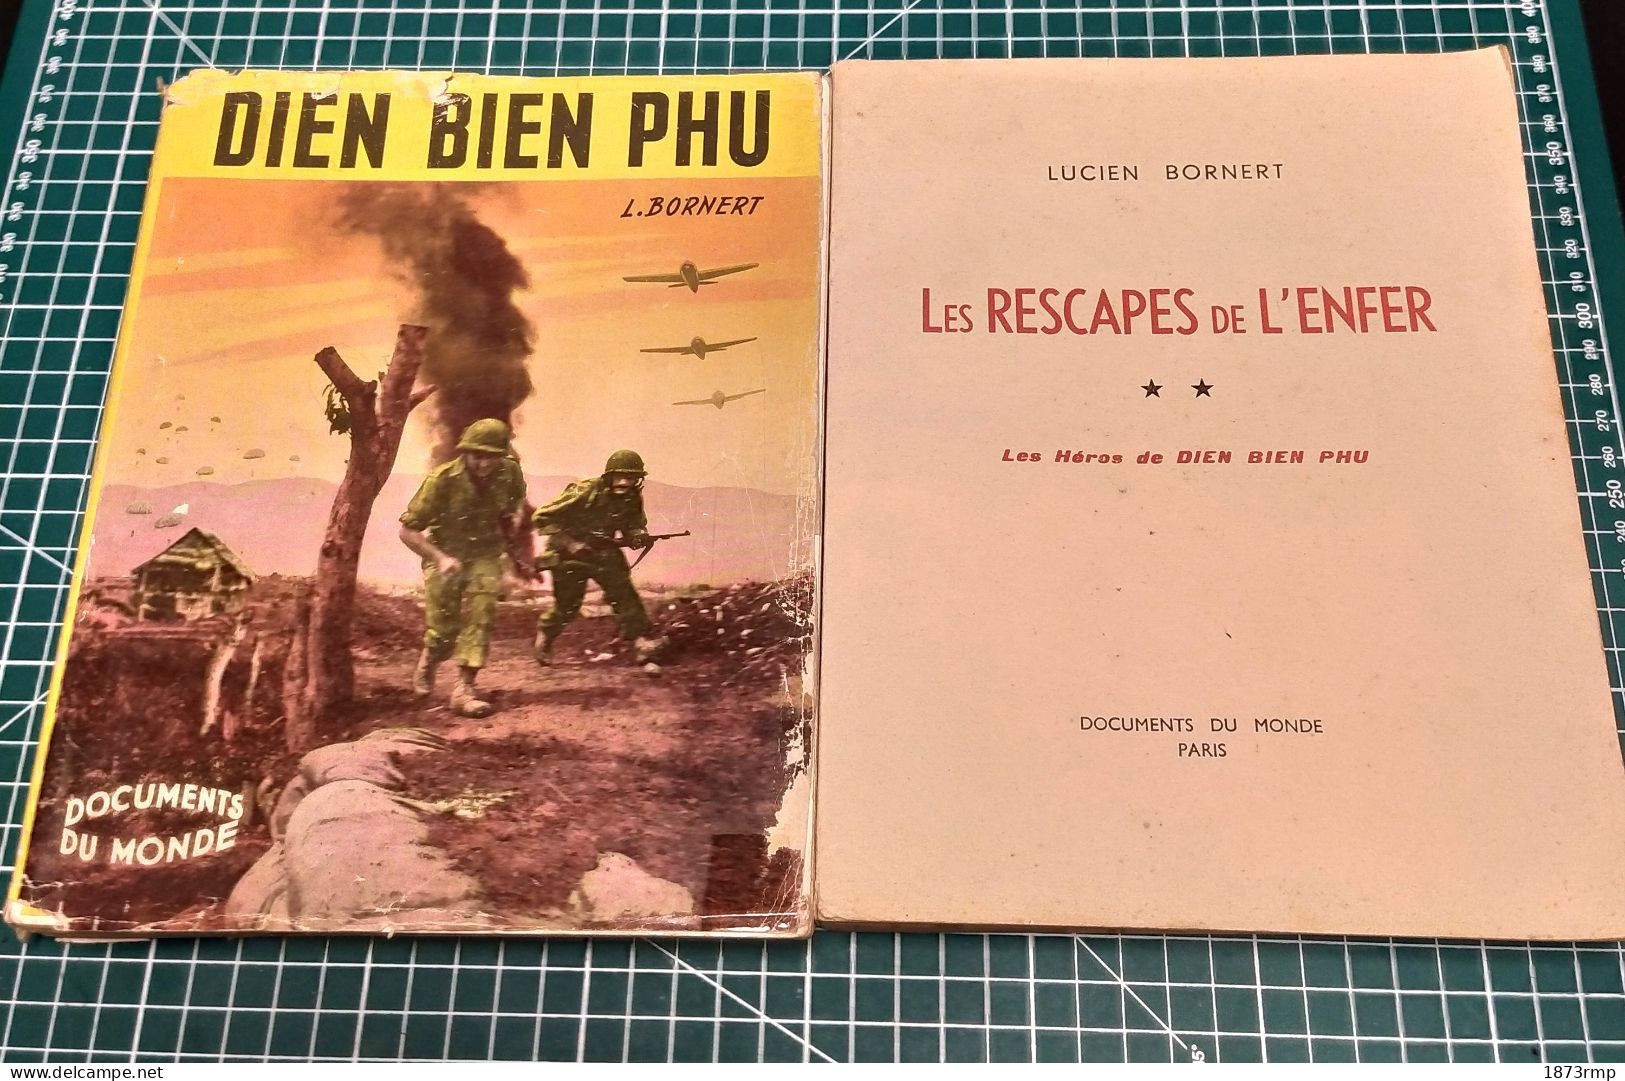 DIÊN BIÊN PHU ET LES RESCAPES DE L'ENFER, LUCIEN BORNERT, EDITION ORIGINALE 1954, GUERRE D'INDOCHINE - Frans